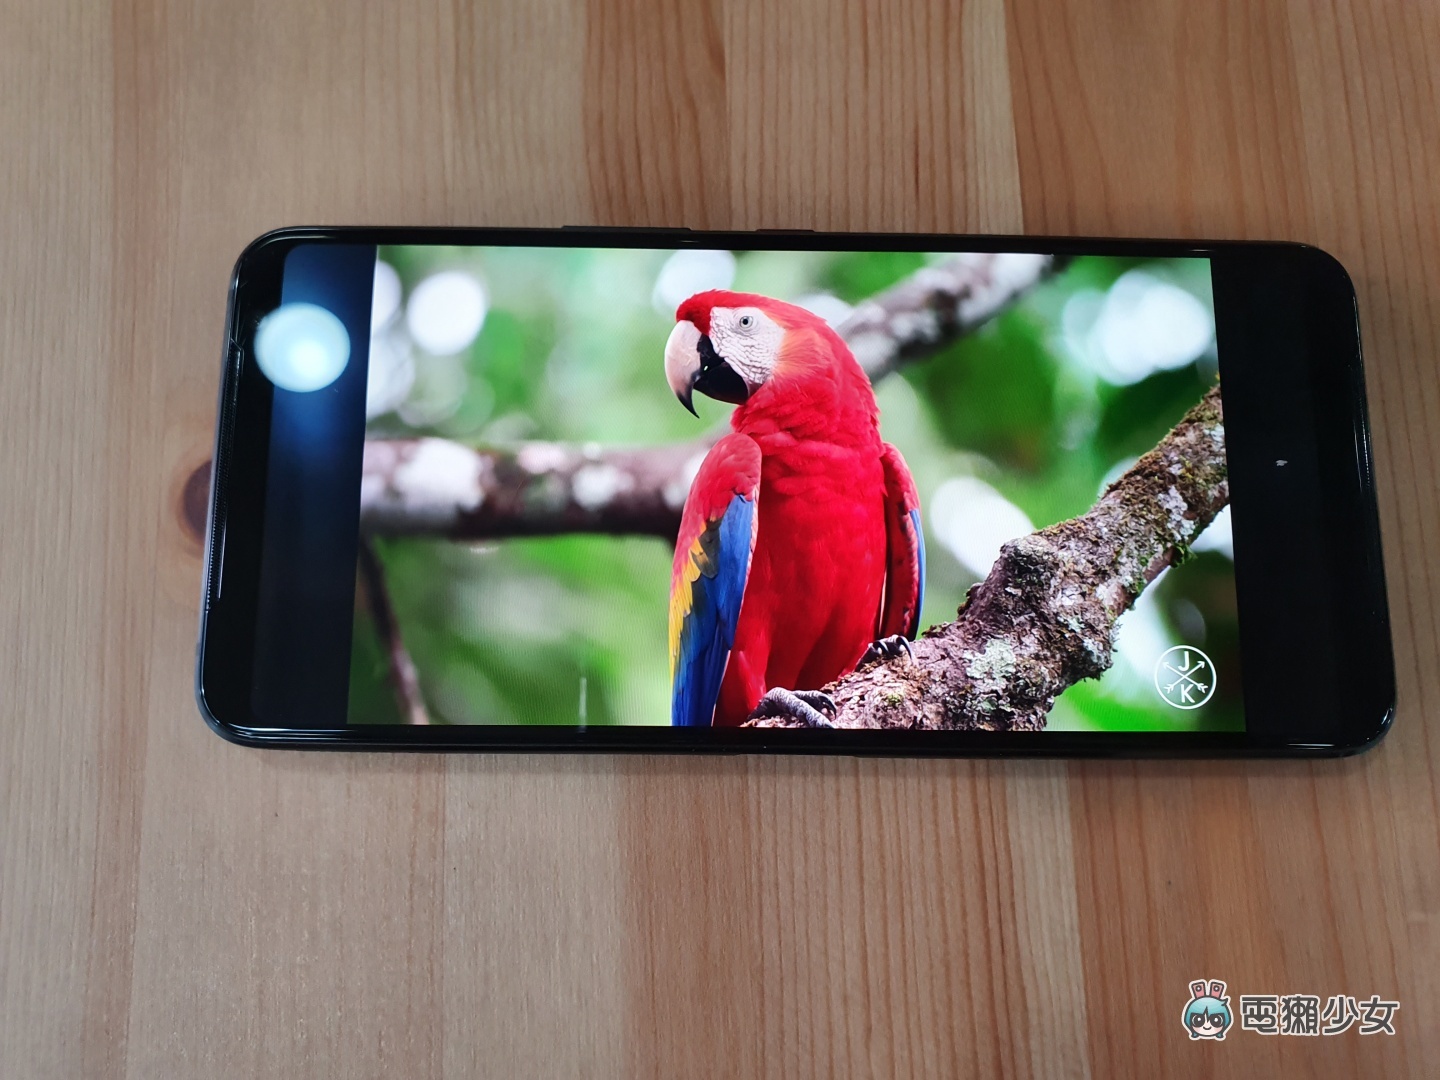 開箱｜ROG Phone 3 降臨！穩定高效不發燙不爆 ping，功能性與外貌兼備